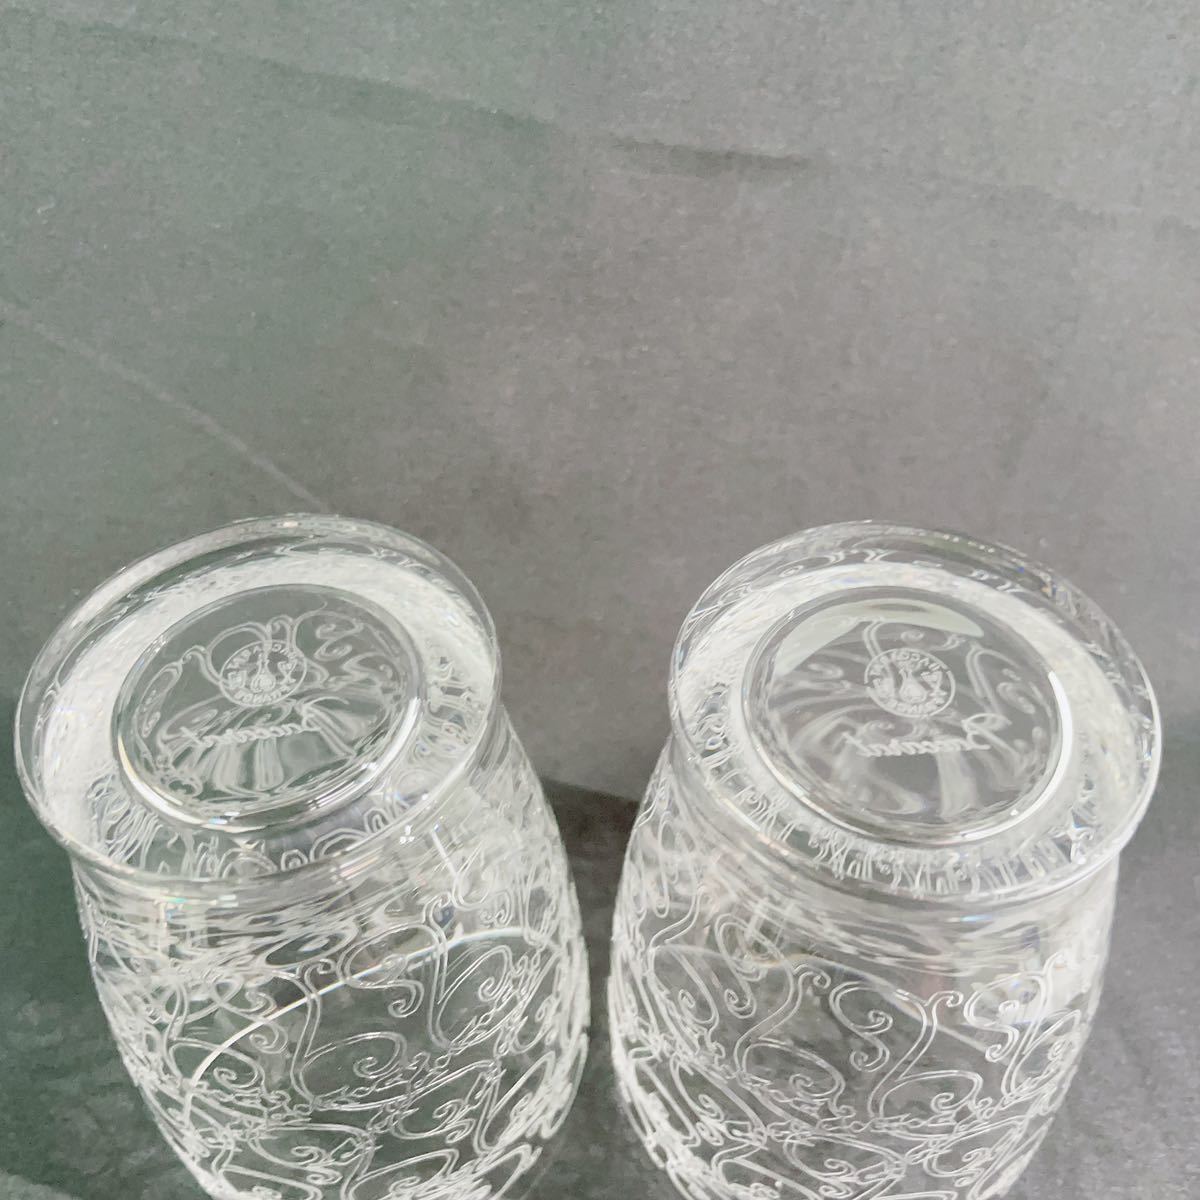 【 未使用 】 Baccarat ローハン 樽型 グラス バカラ クリスタル 食器 アンティーク ショットグラス タンブラー エッチング模様 グビュー_画像5